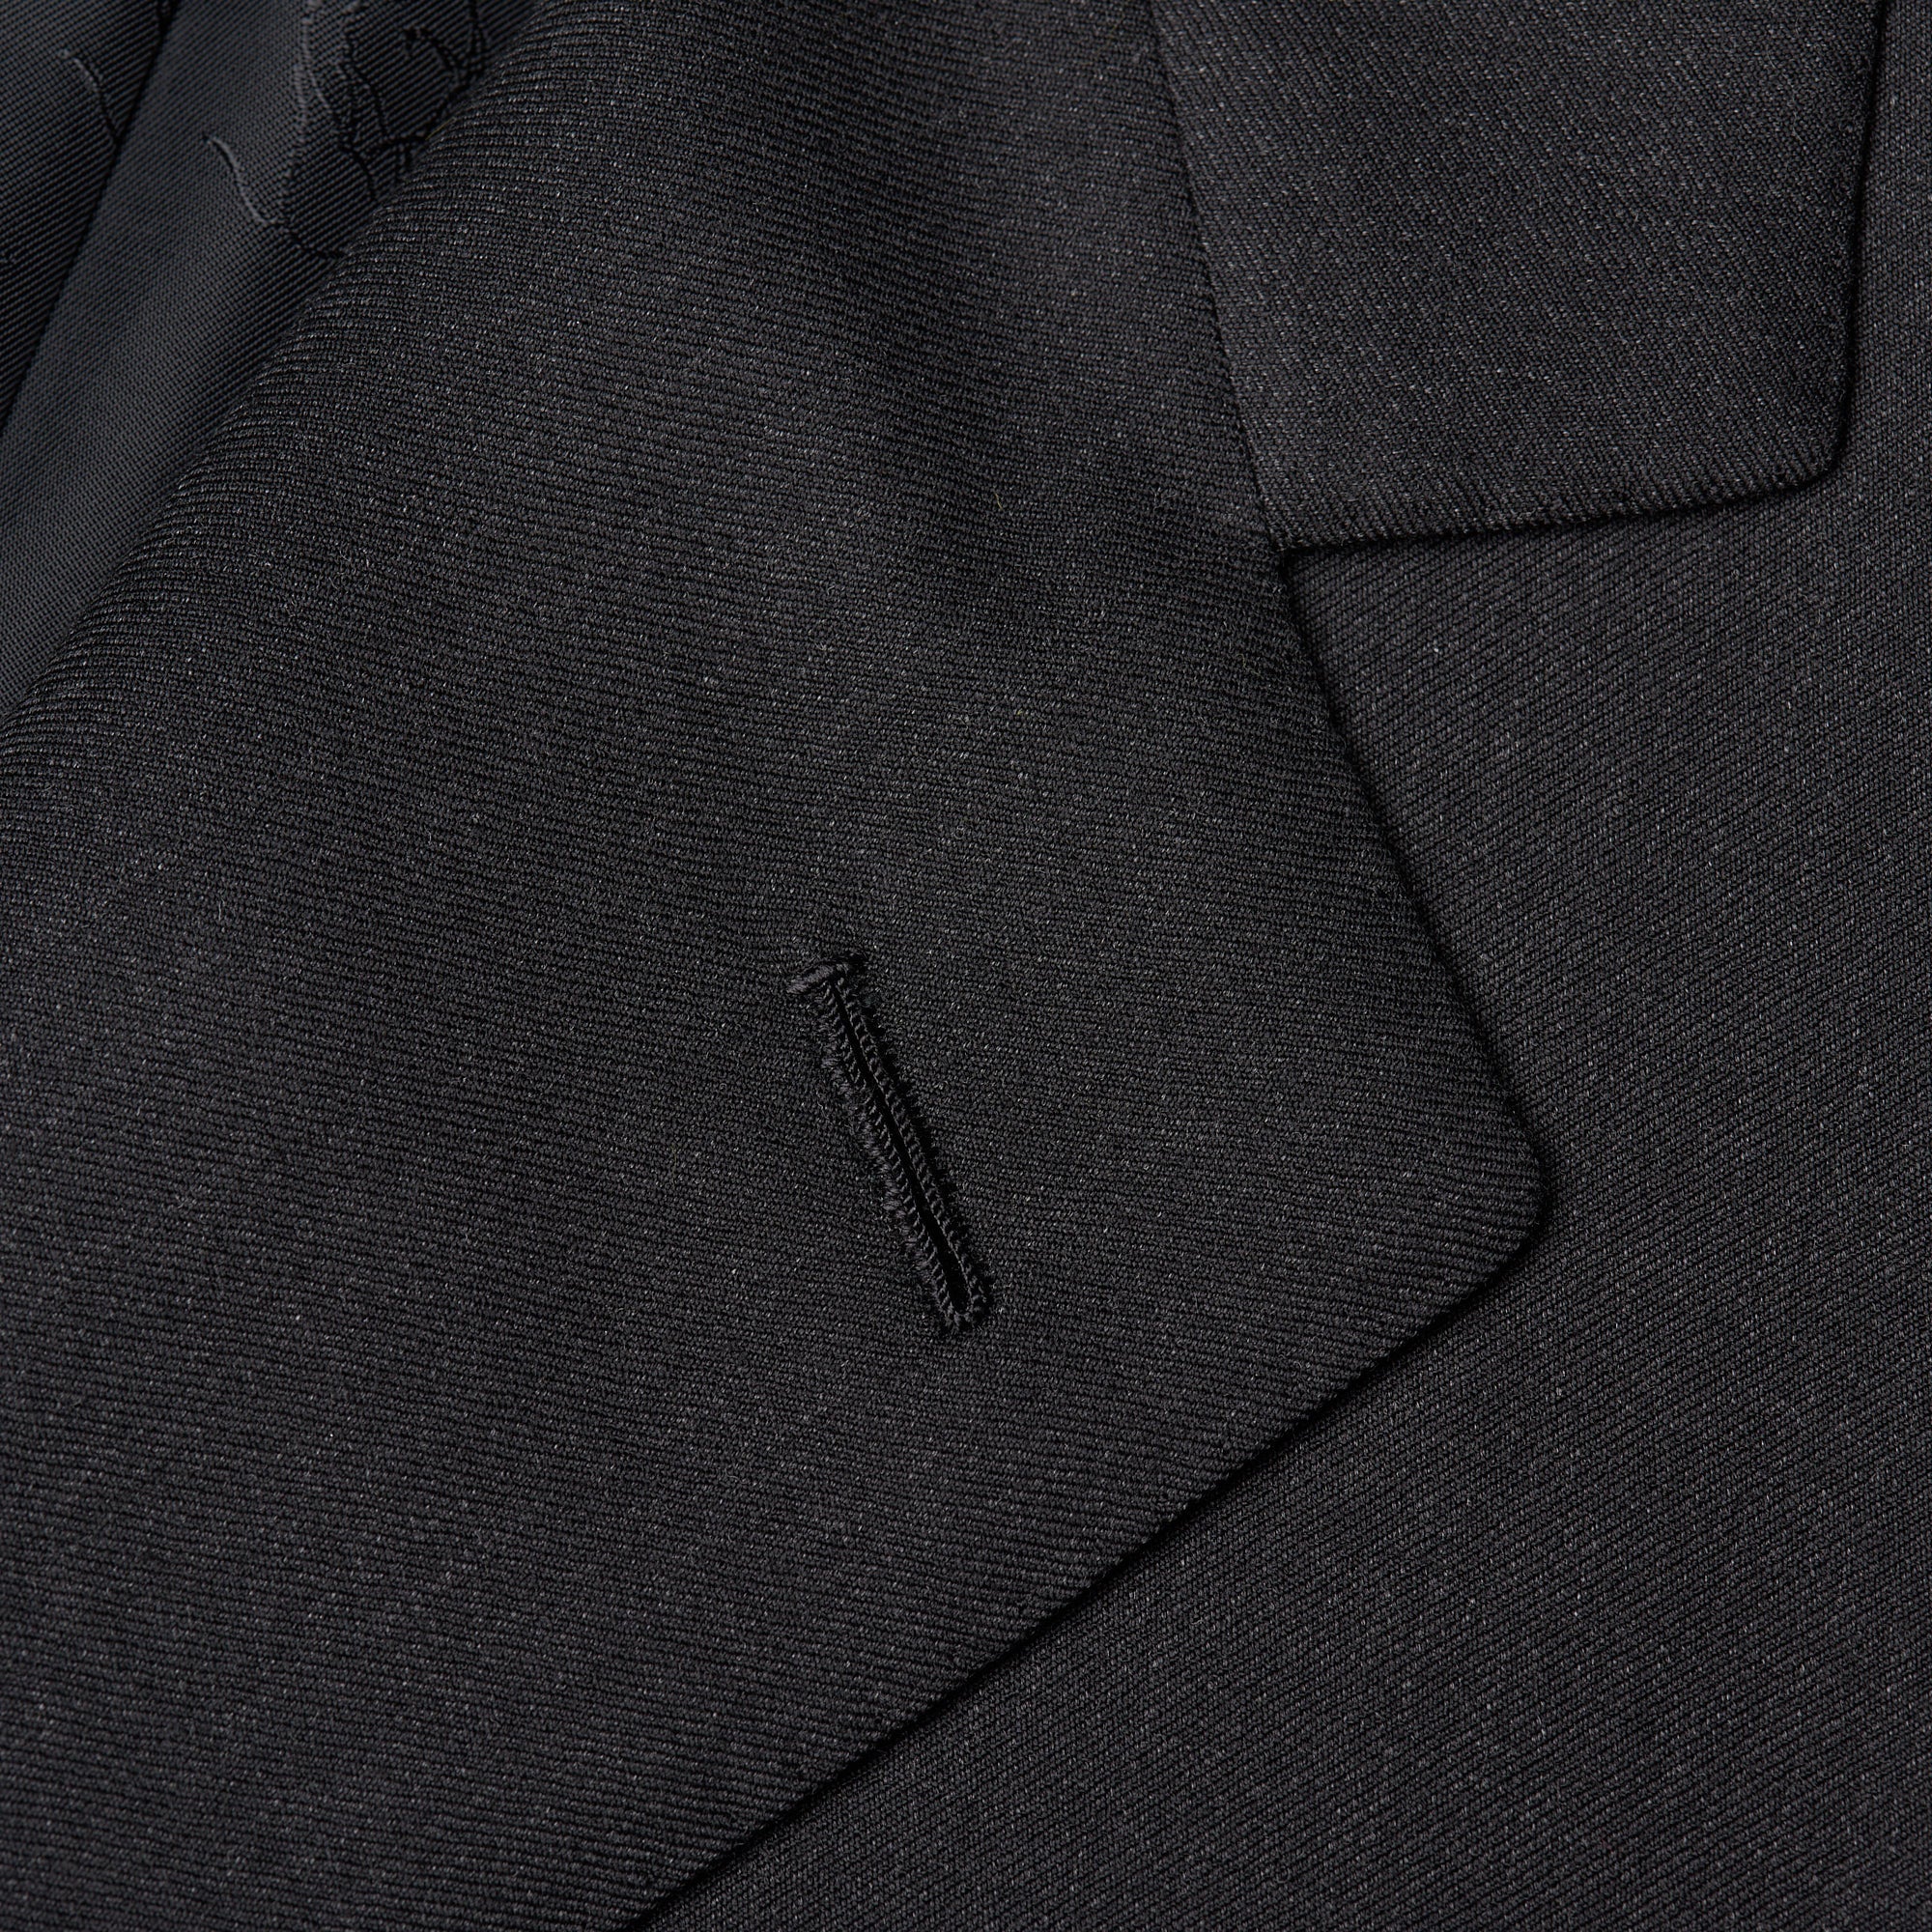 BRIONI "CATONE" Handmade Dark Gray Wool Suit 52 NEW 42 BRIONI